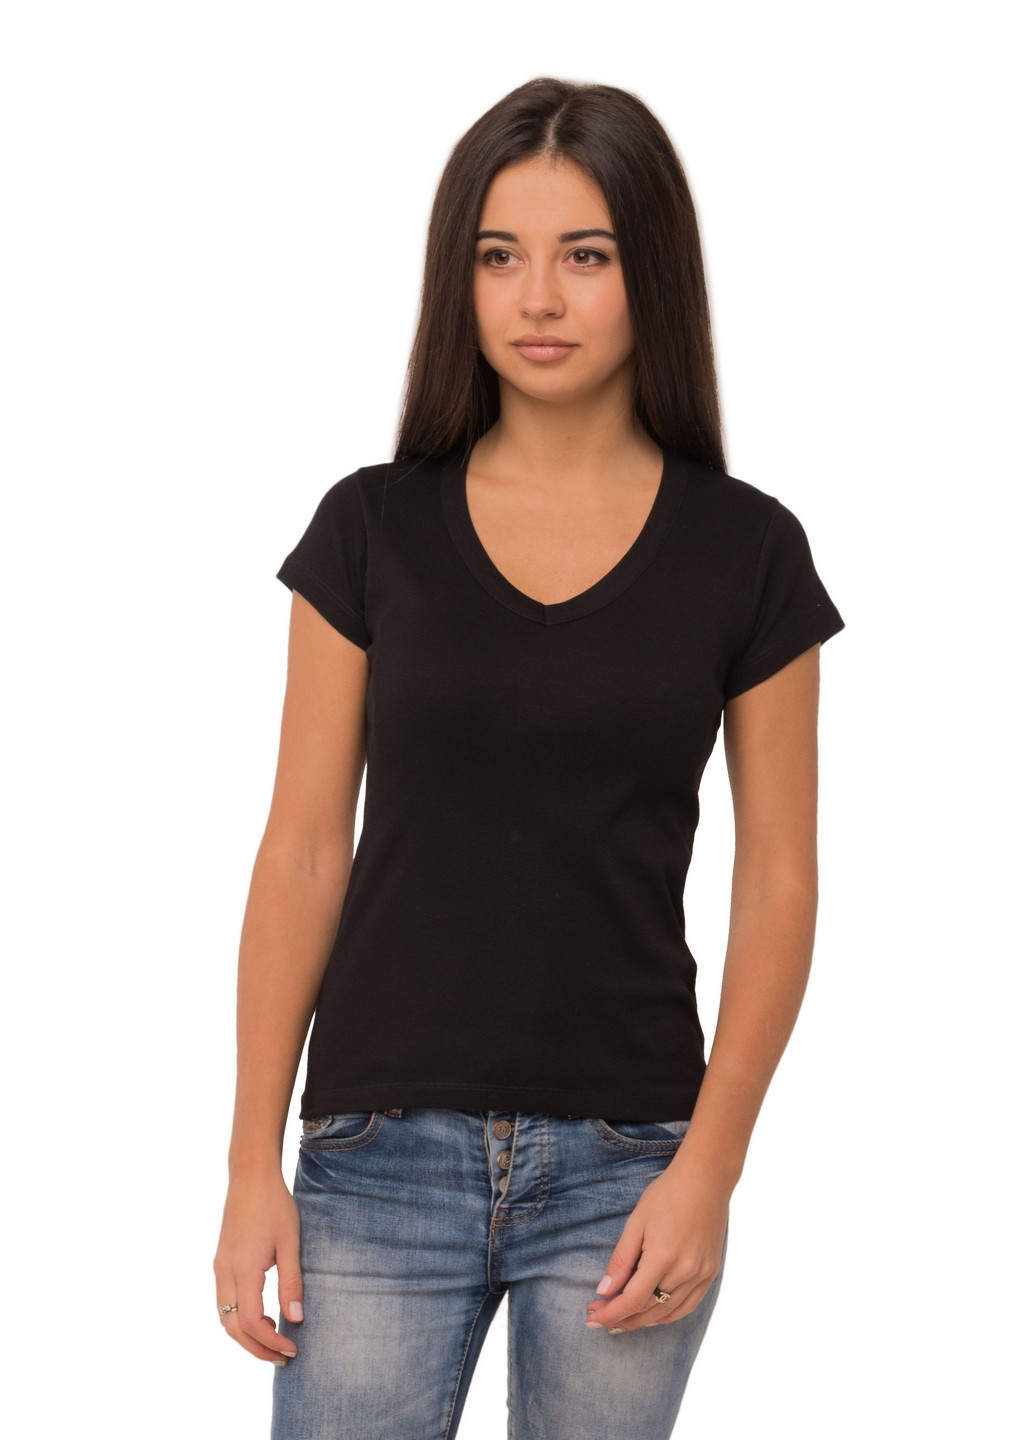 Черная всесезон футболка женская Наталюкс 21-2369